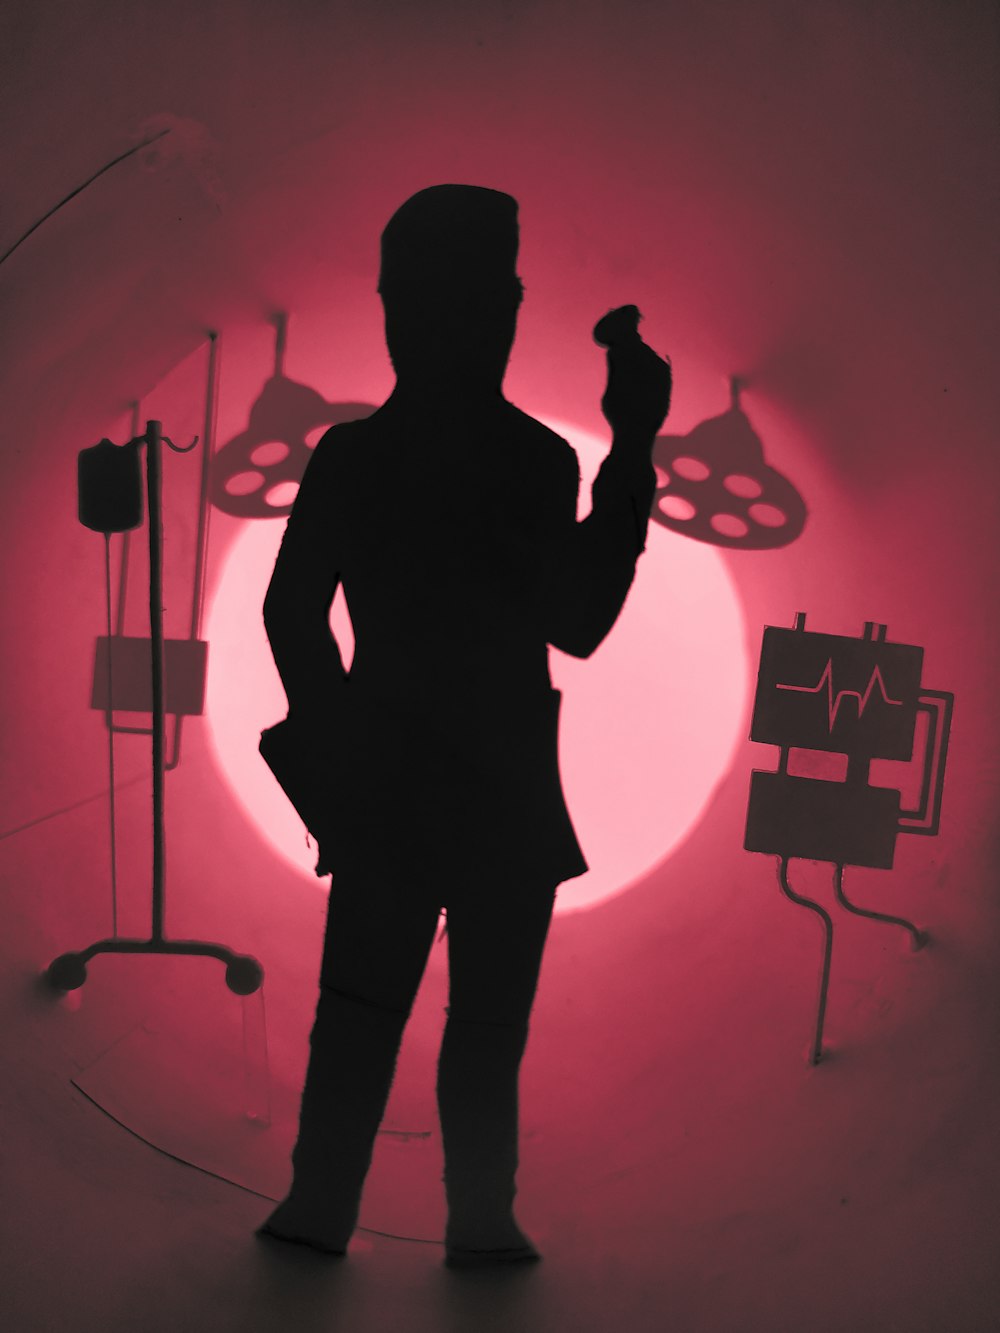 una silueta de una persona parada frente a una luz roja